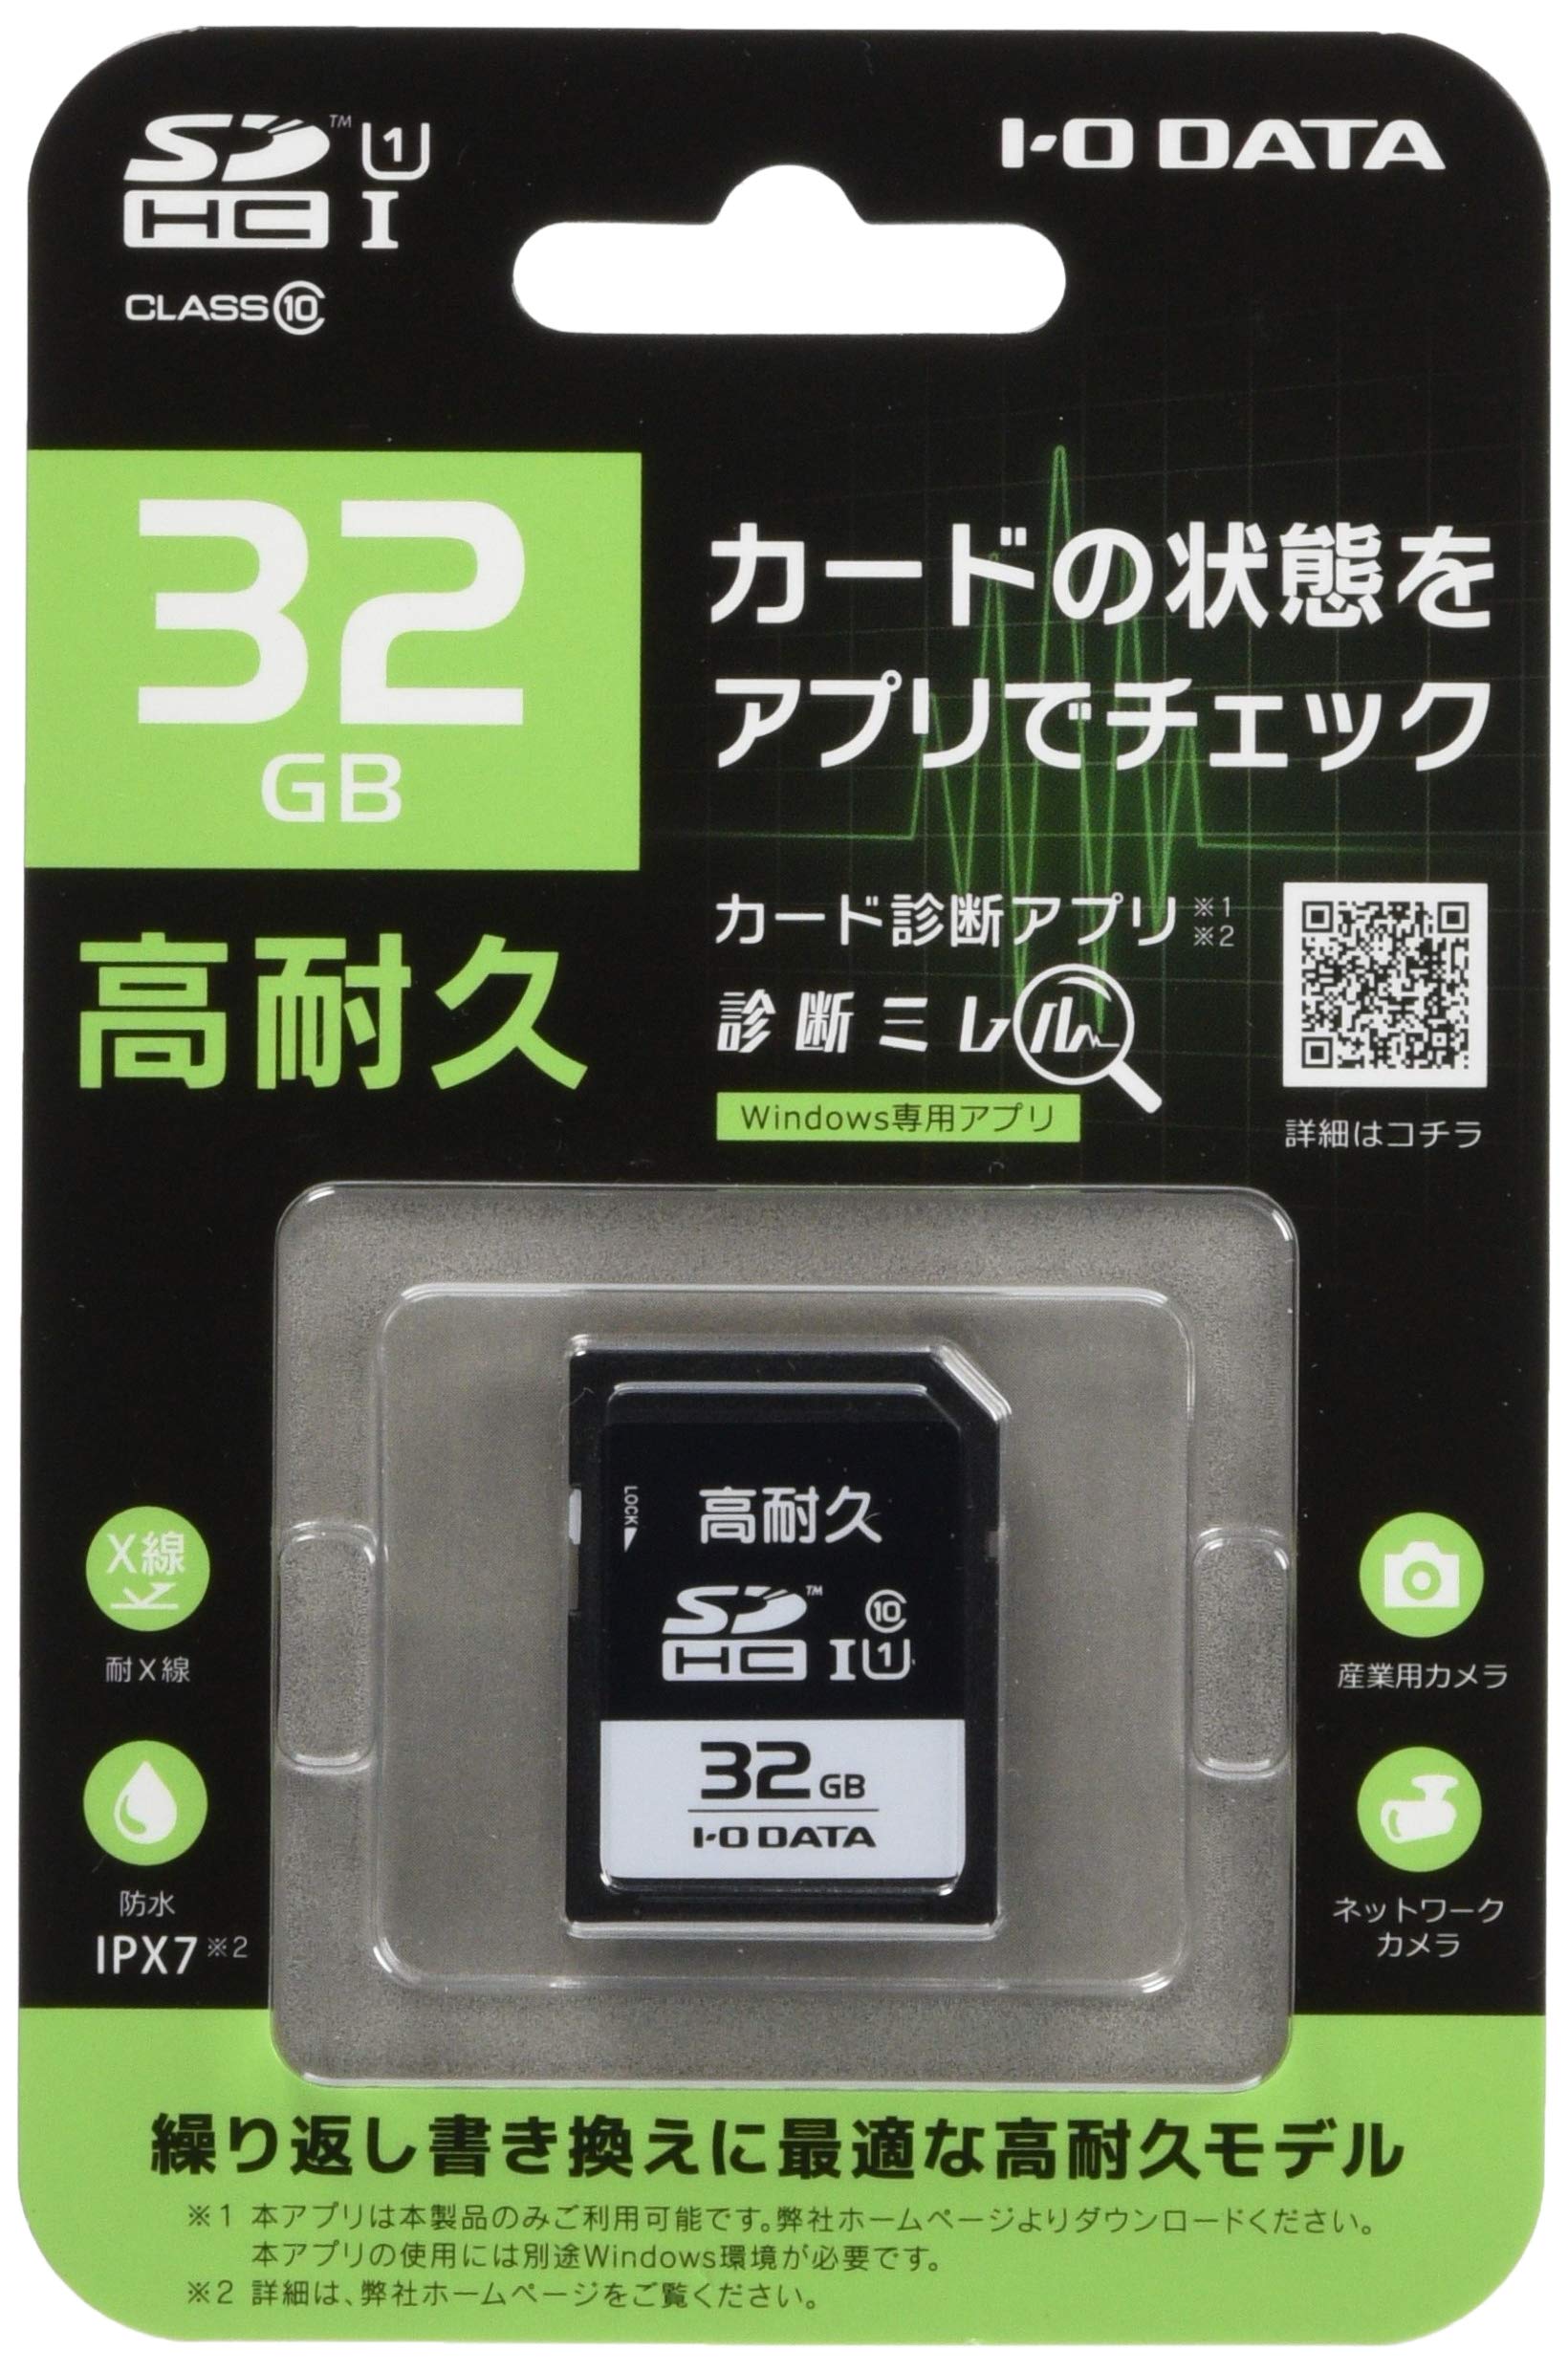 I-O DATA SDメモリーカード 32GBUHS-I UHS スピードクラス1 対応高耐久SD-IMA32G